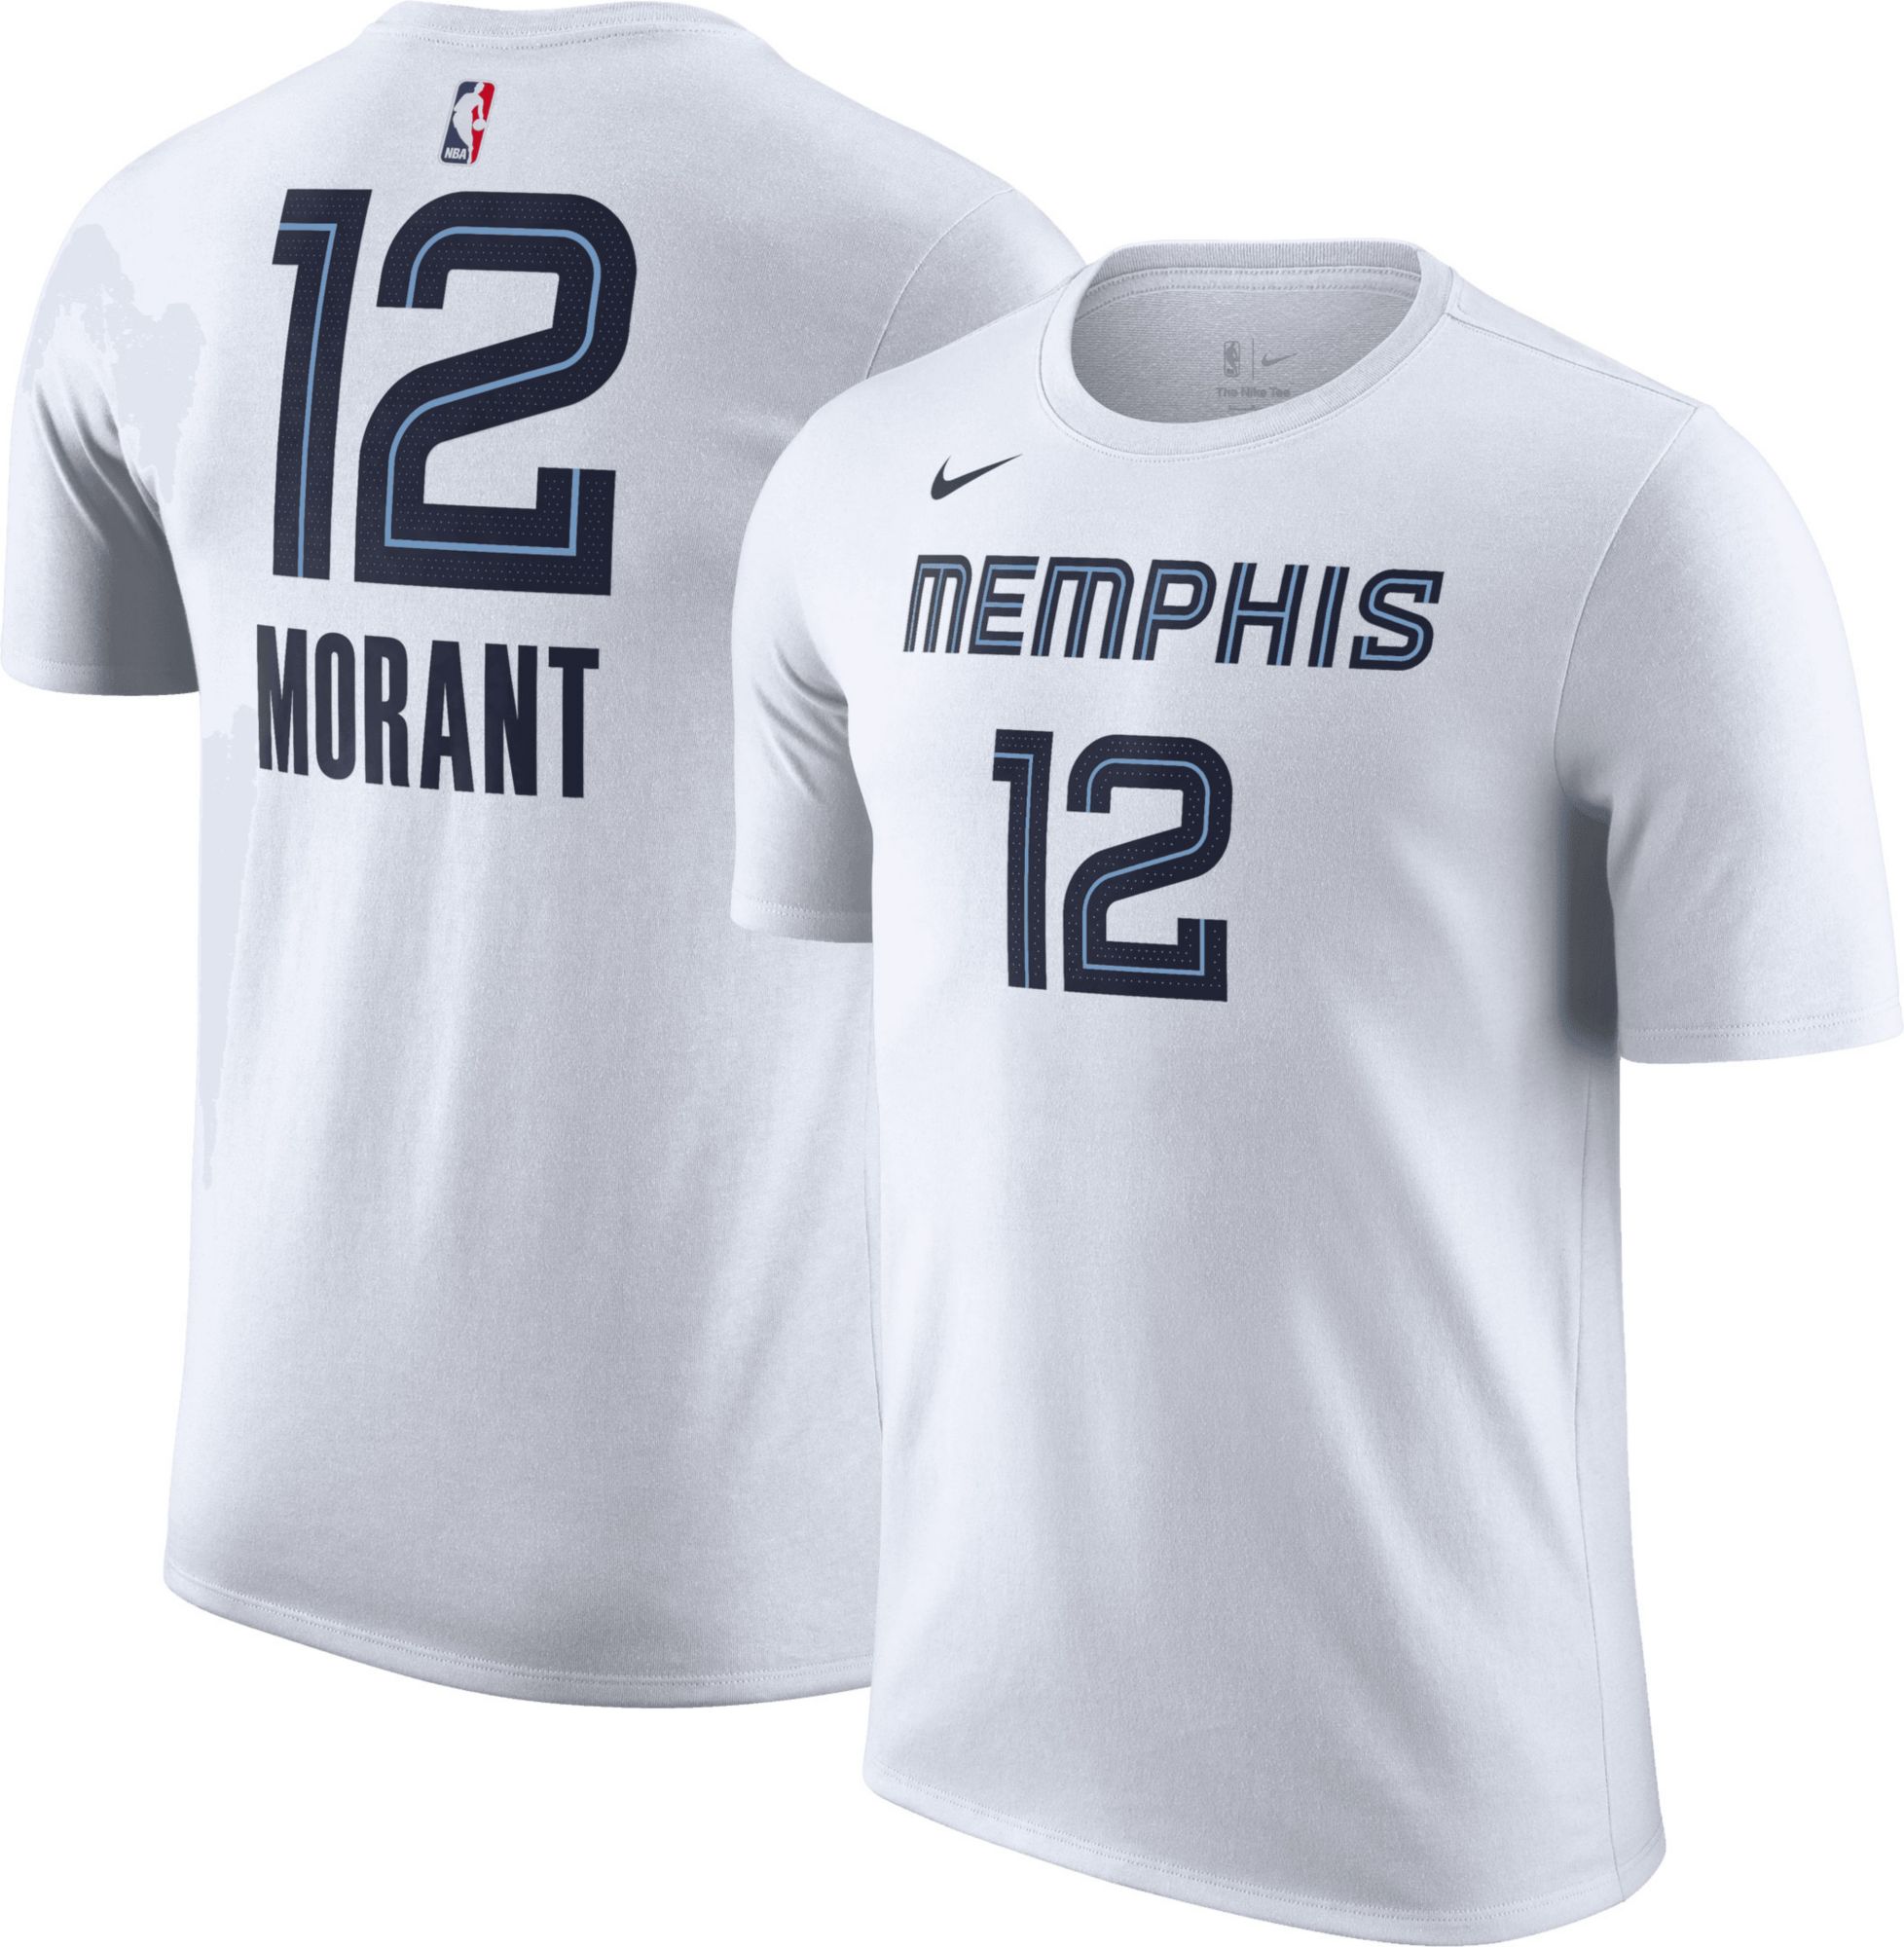 Ja Morant is the tech fleece king 👑 - Memphis Grizzlies